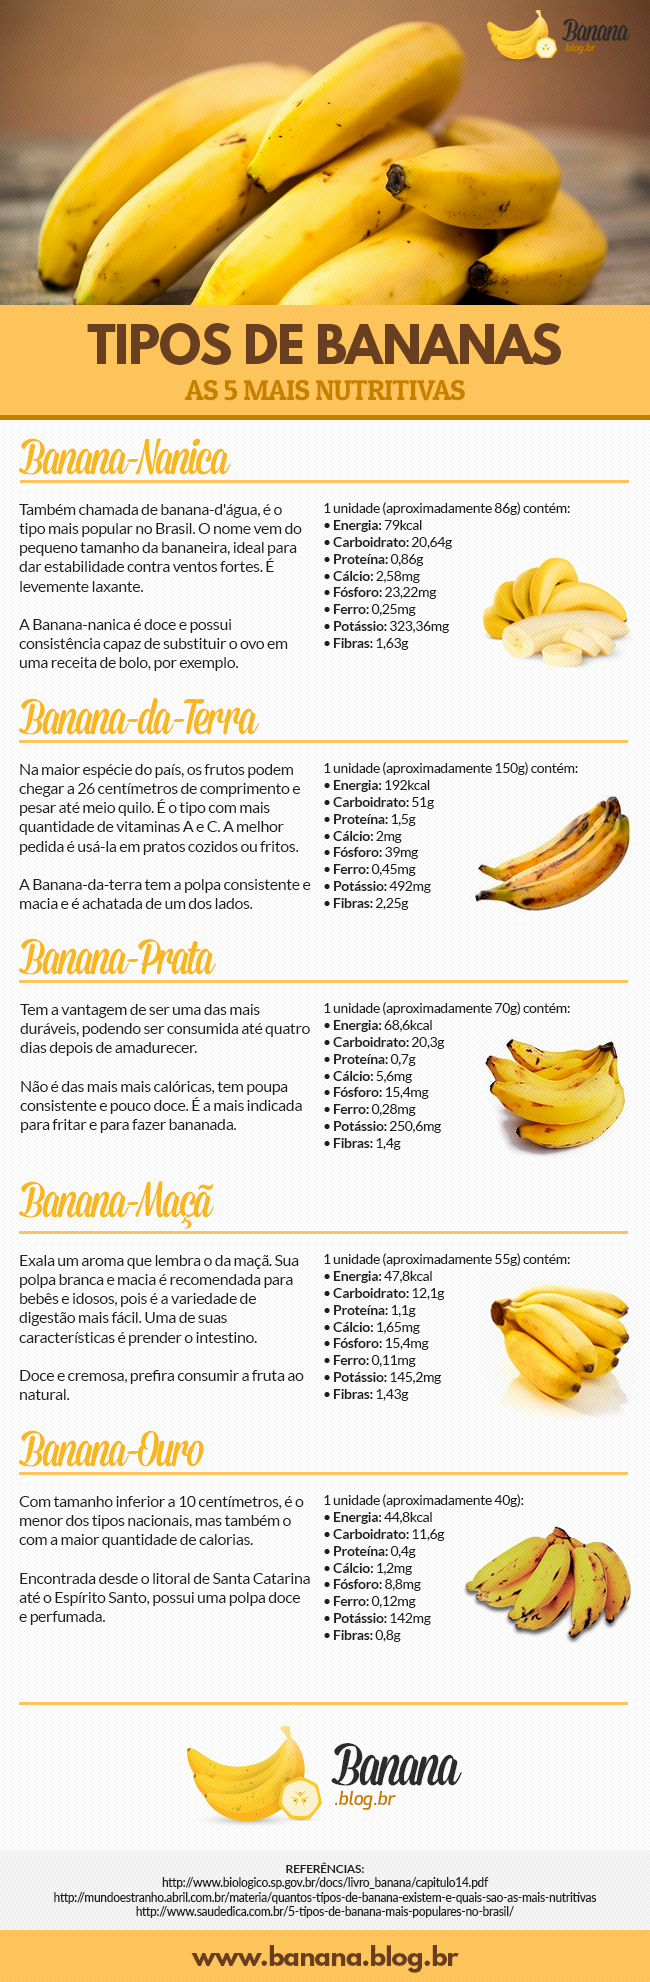 Inforgráfico com os 5 tipos de Bananas mais nutritivas: Banana Prata, Banana Maçã, Banana Ouro e a Banana da Terra. Veja também suas calorias e nutrientes